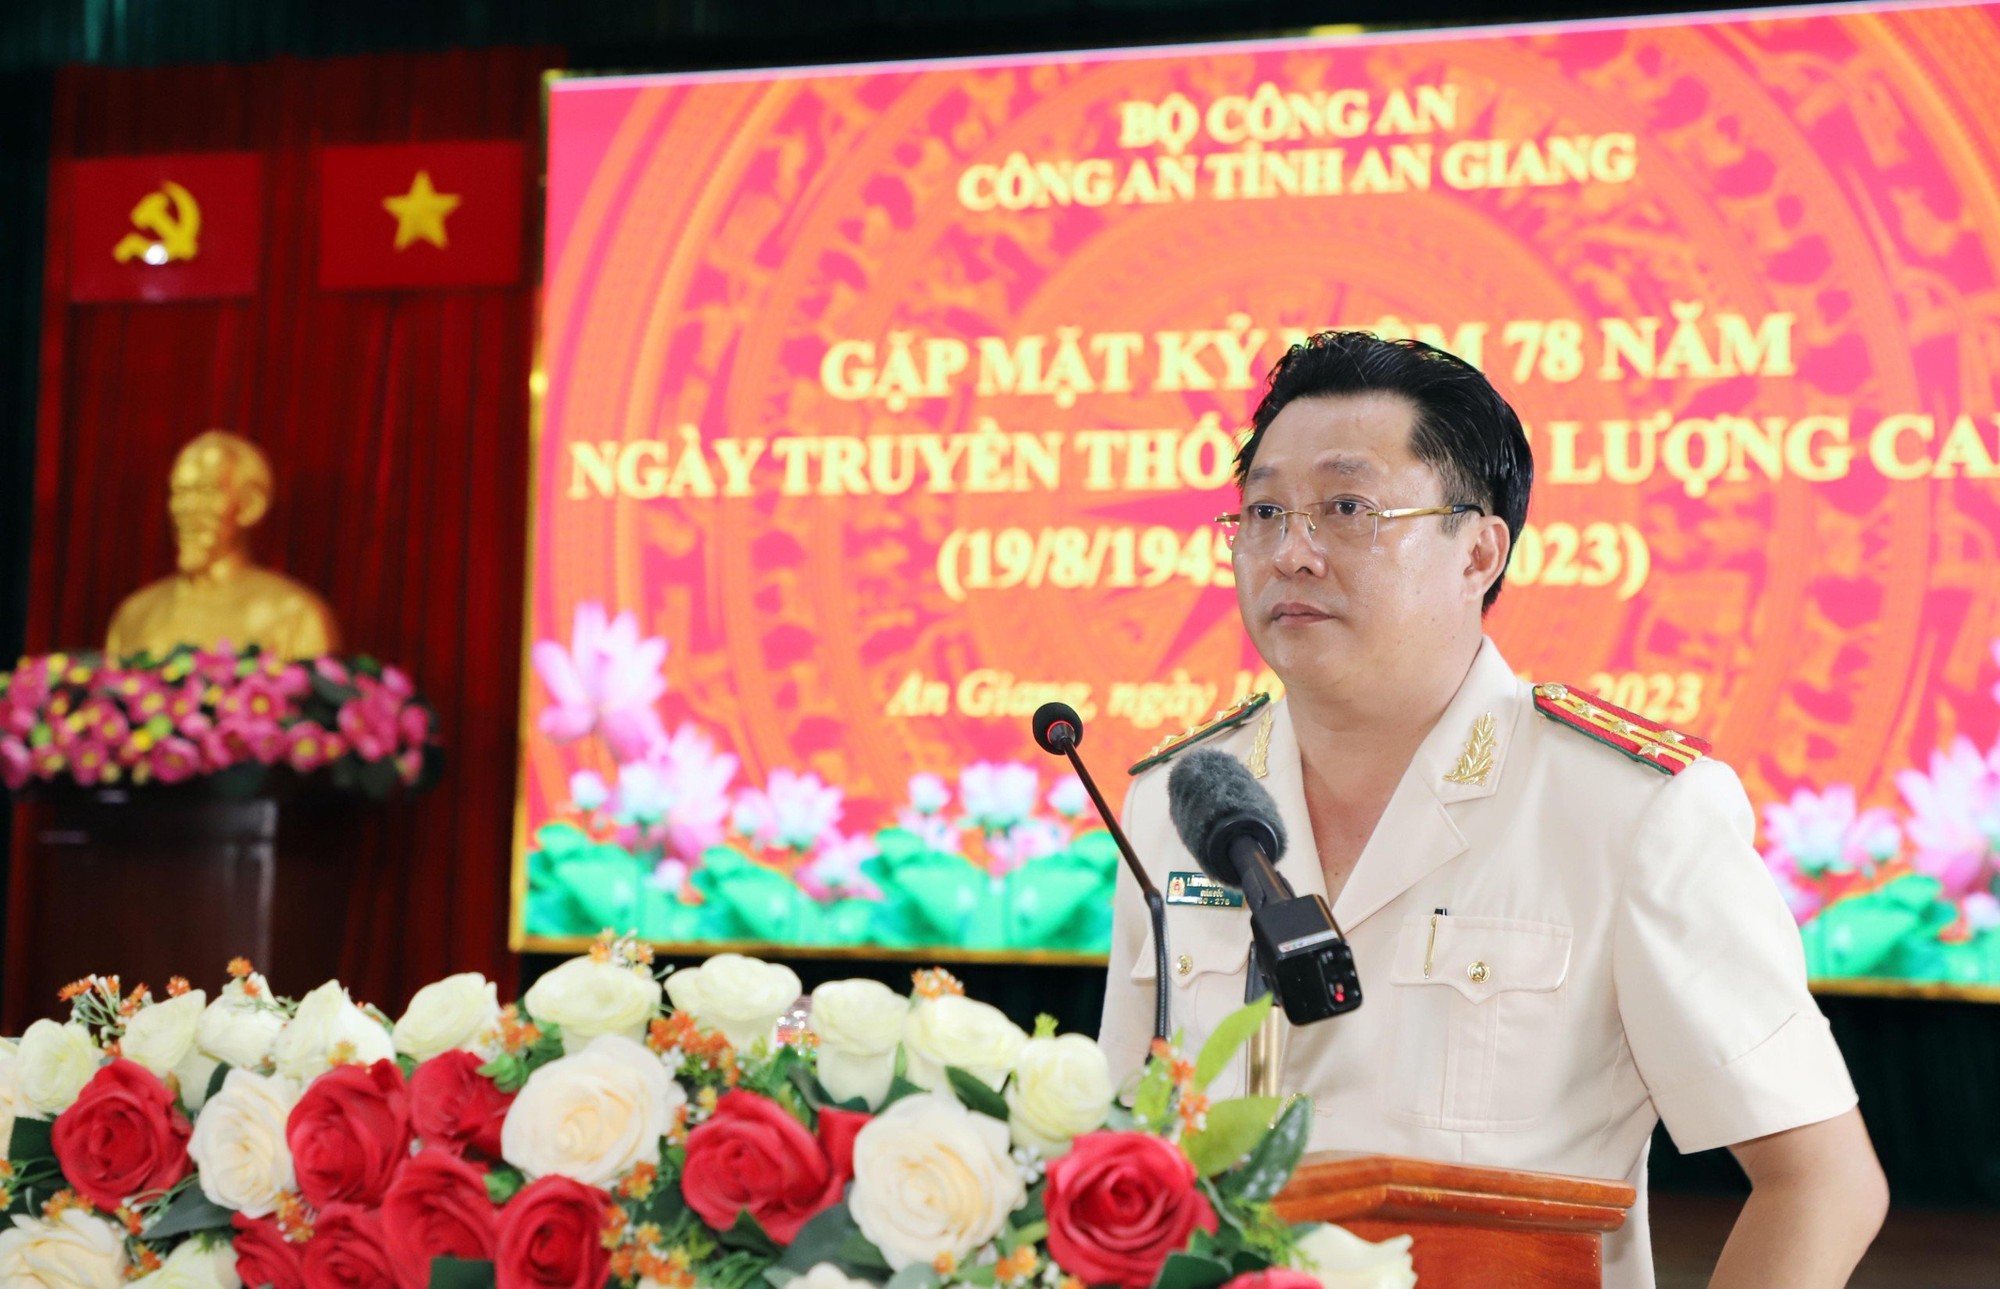 Chủ tịch nước Võ Văn Thưởng thăm, làm việc tại Công an tỉnh An Giang - Ảnh 5.